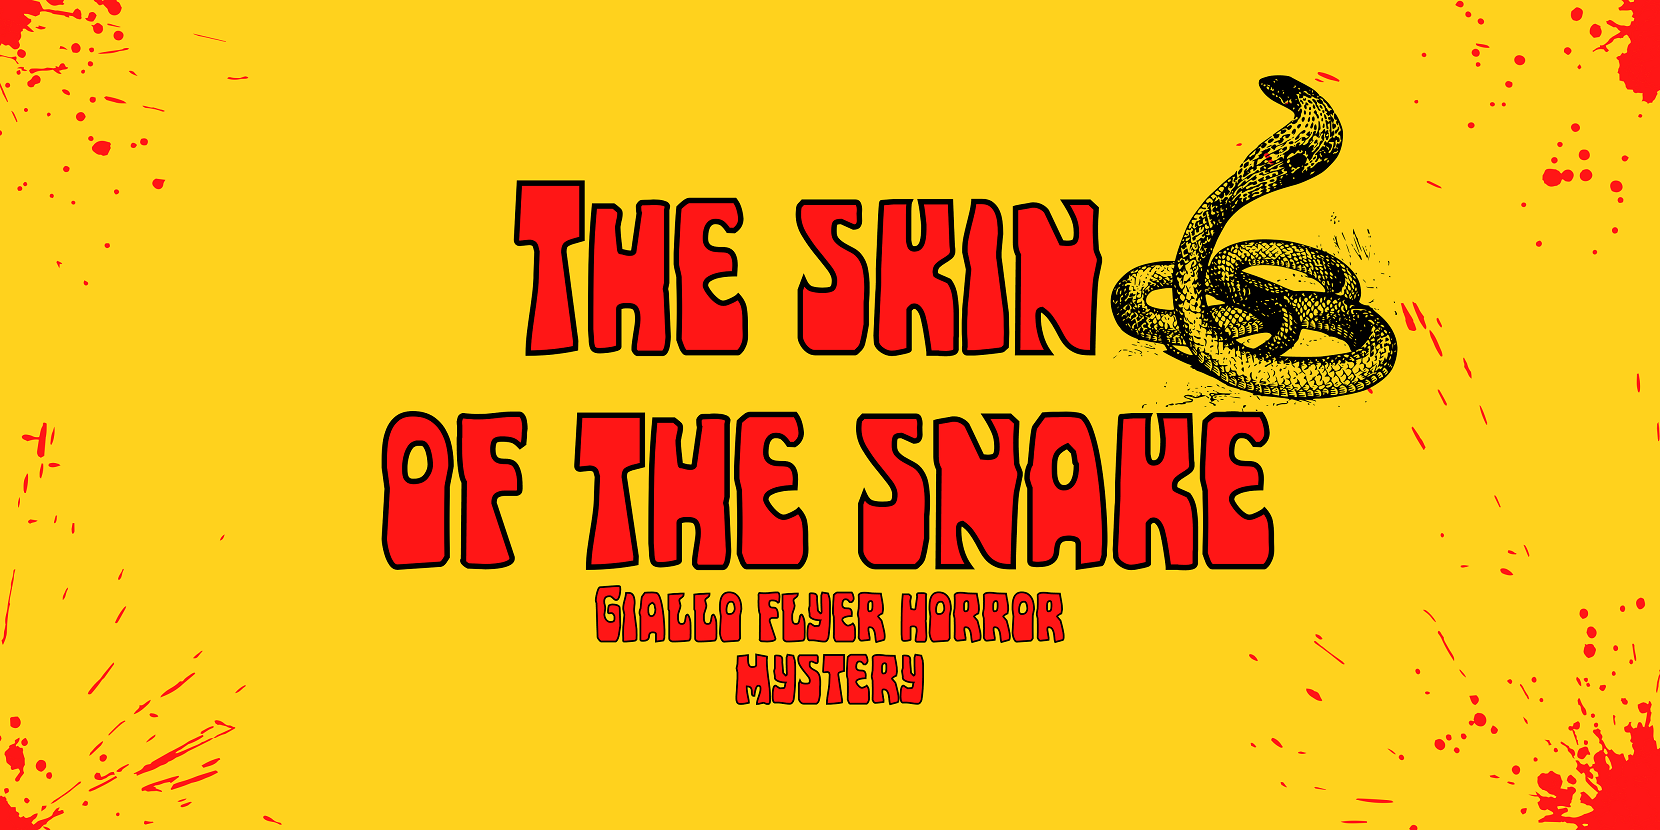 THE SKIN OF THE SNAKE - Flyer for Liminal Horror RPG